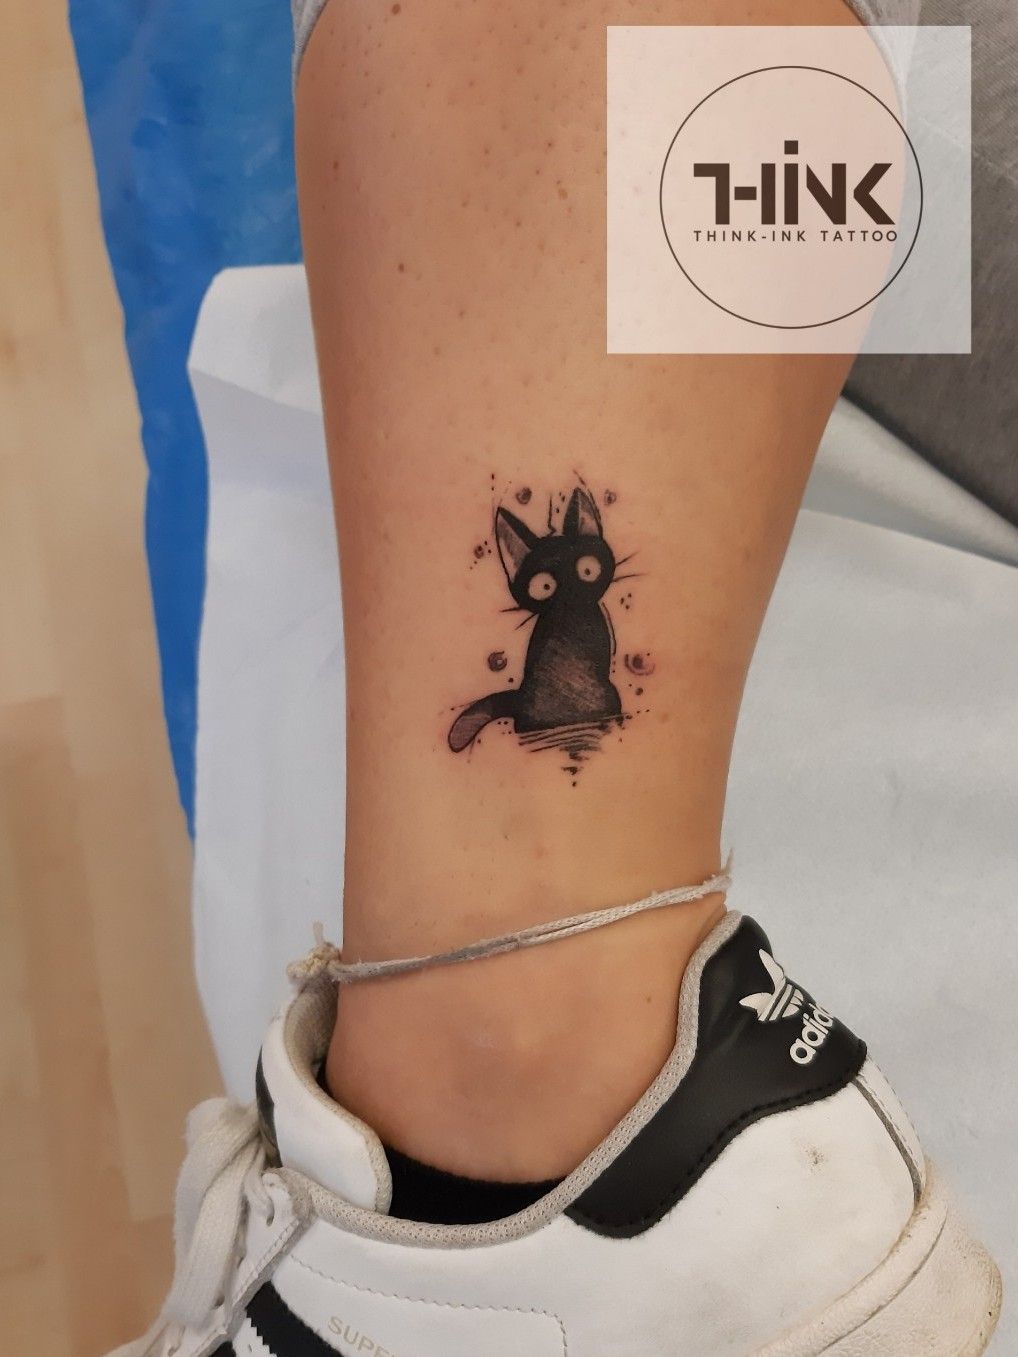 Tattoo uploaded by Think-Ink Tattoo • #cartoontattoo • Tattoodo